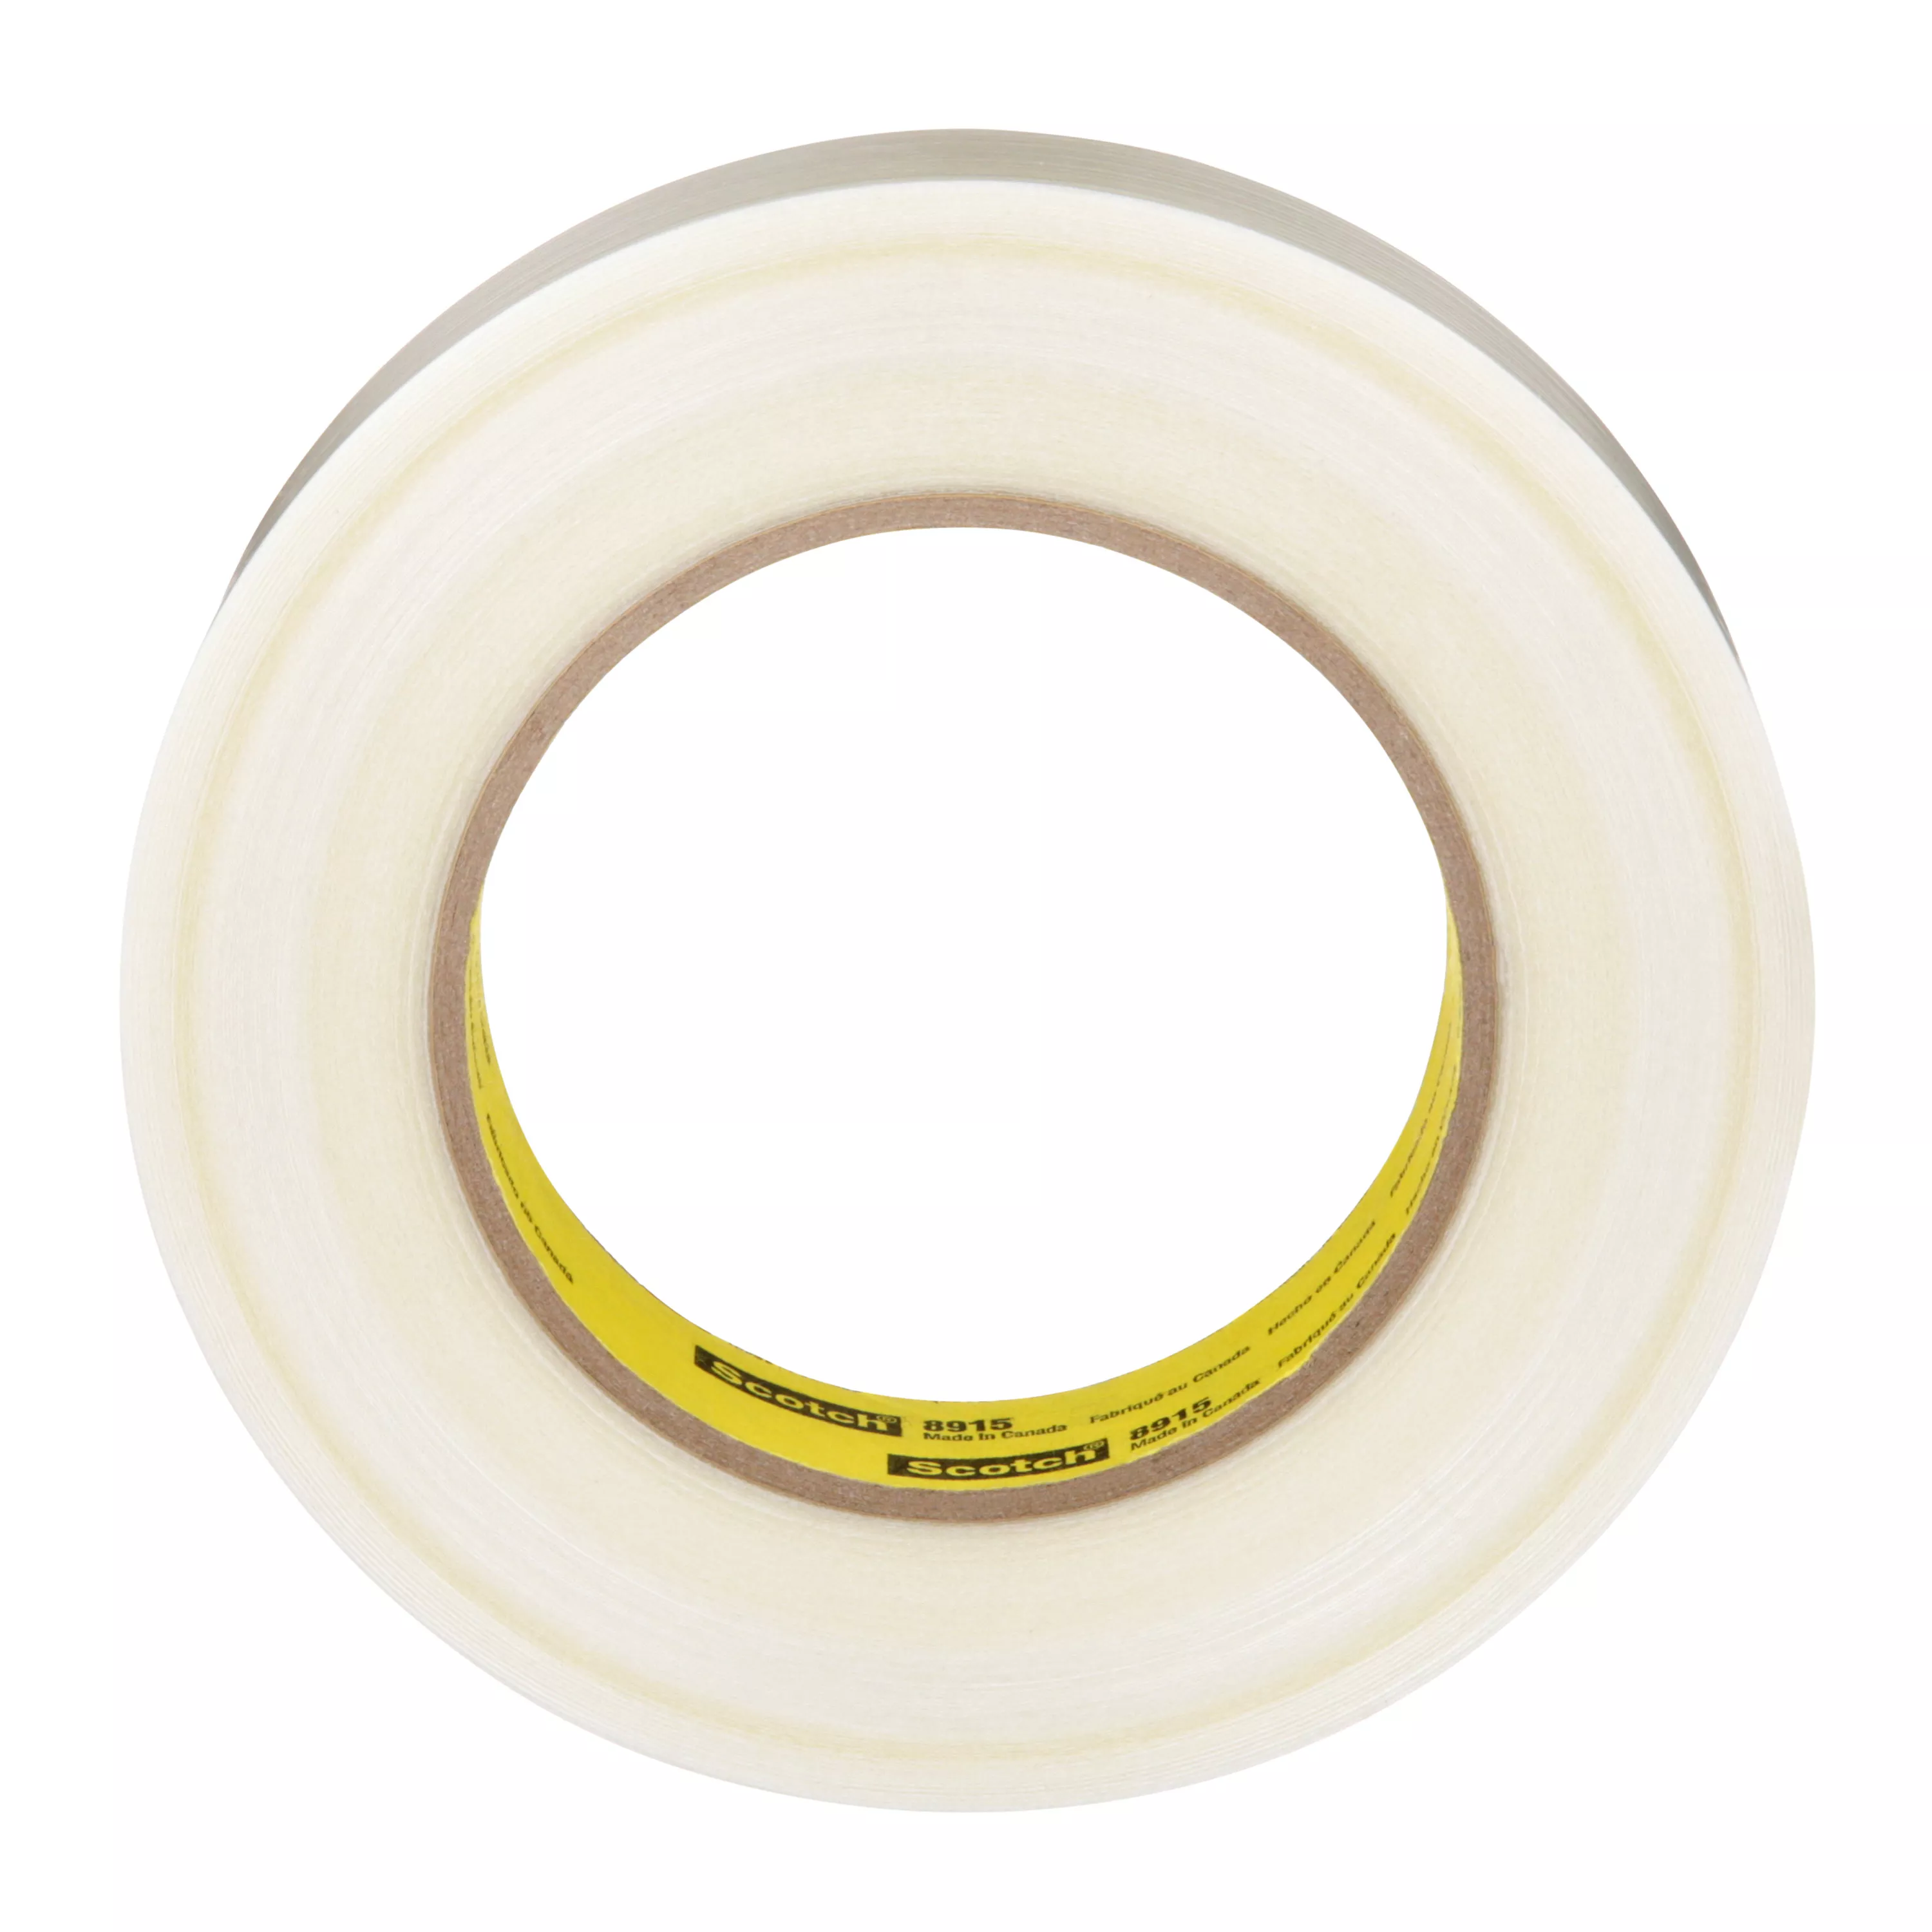 SKU 7000048606 | Scotch® Filament Tape Clean Removal 8915